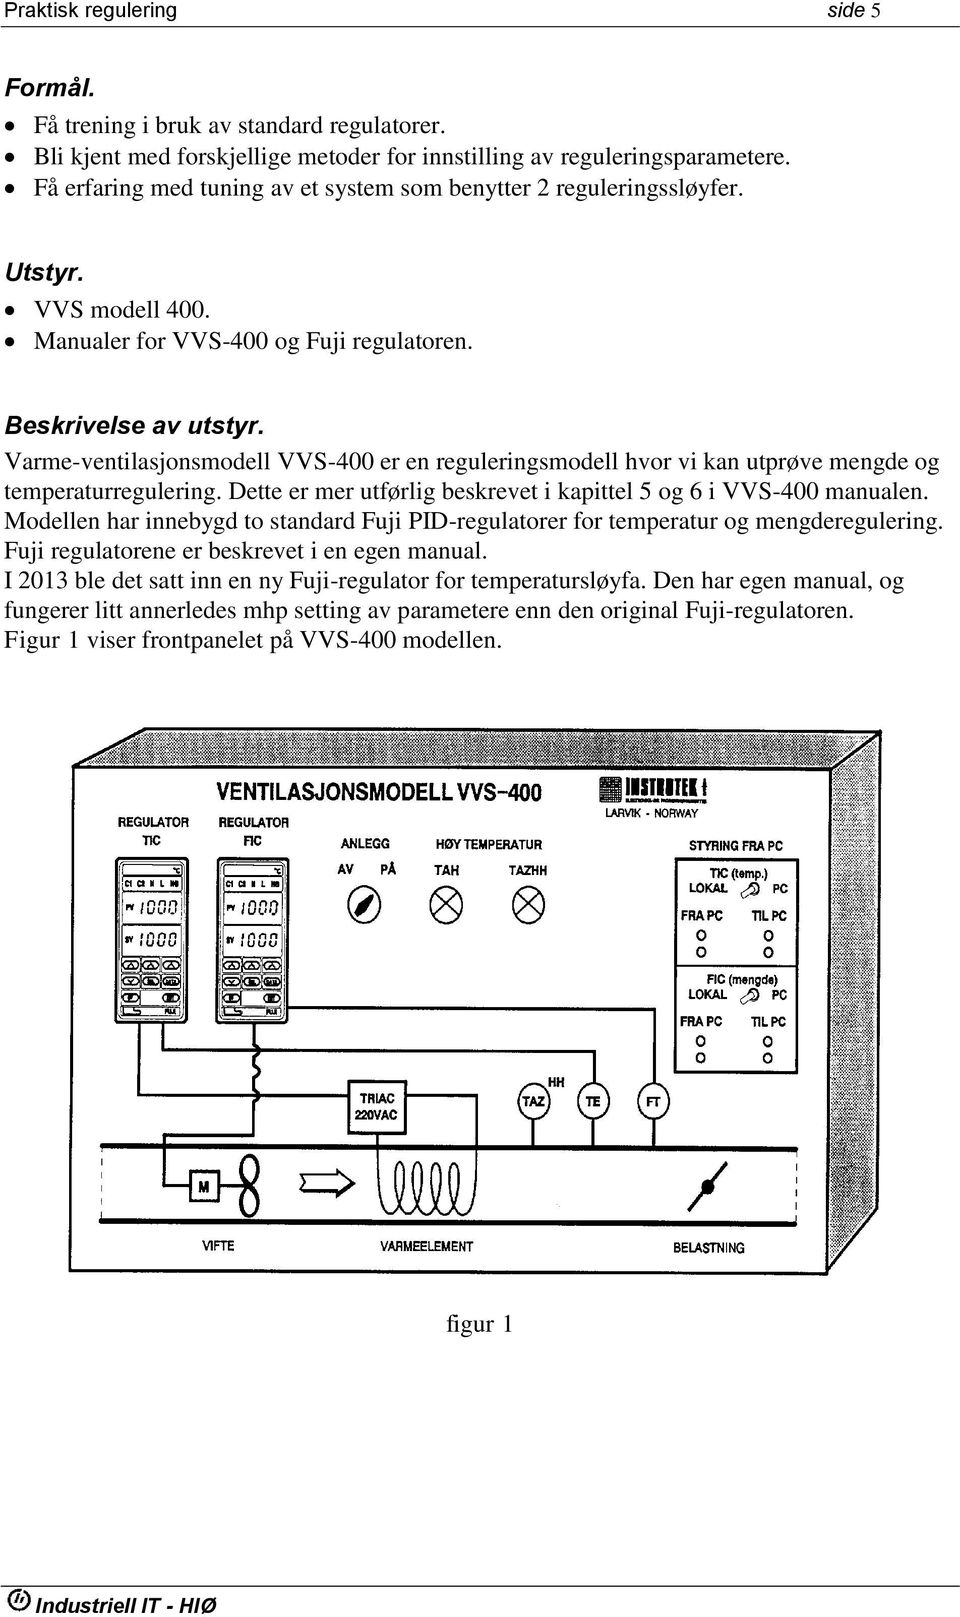 Varme-ventilasjonsmodell VVS-400 er en reguleringsmodell hvor vi kan utprøve mengde og temperaturregulering. Dette er mer utførlig beskrevet i kapittel 5 og 6 i VVS-400 manualen.